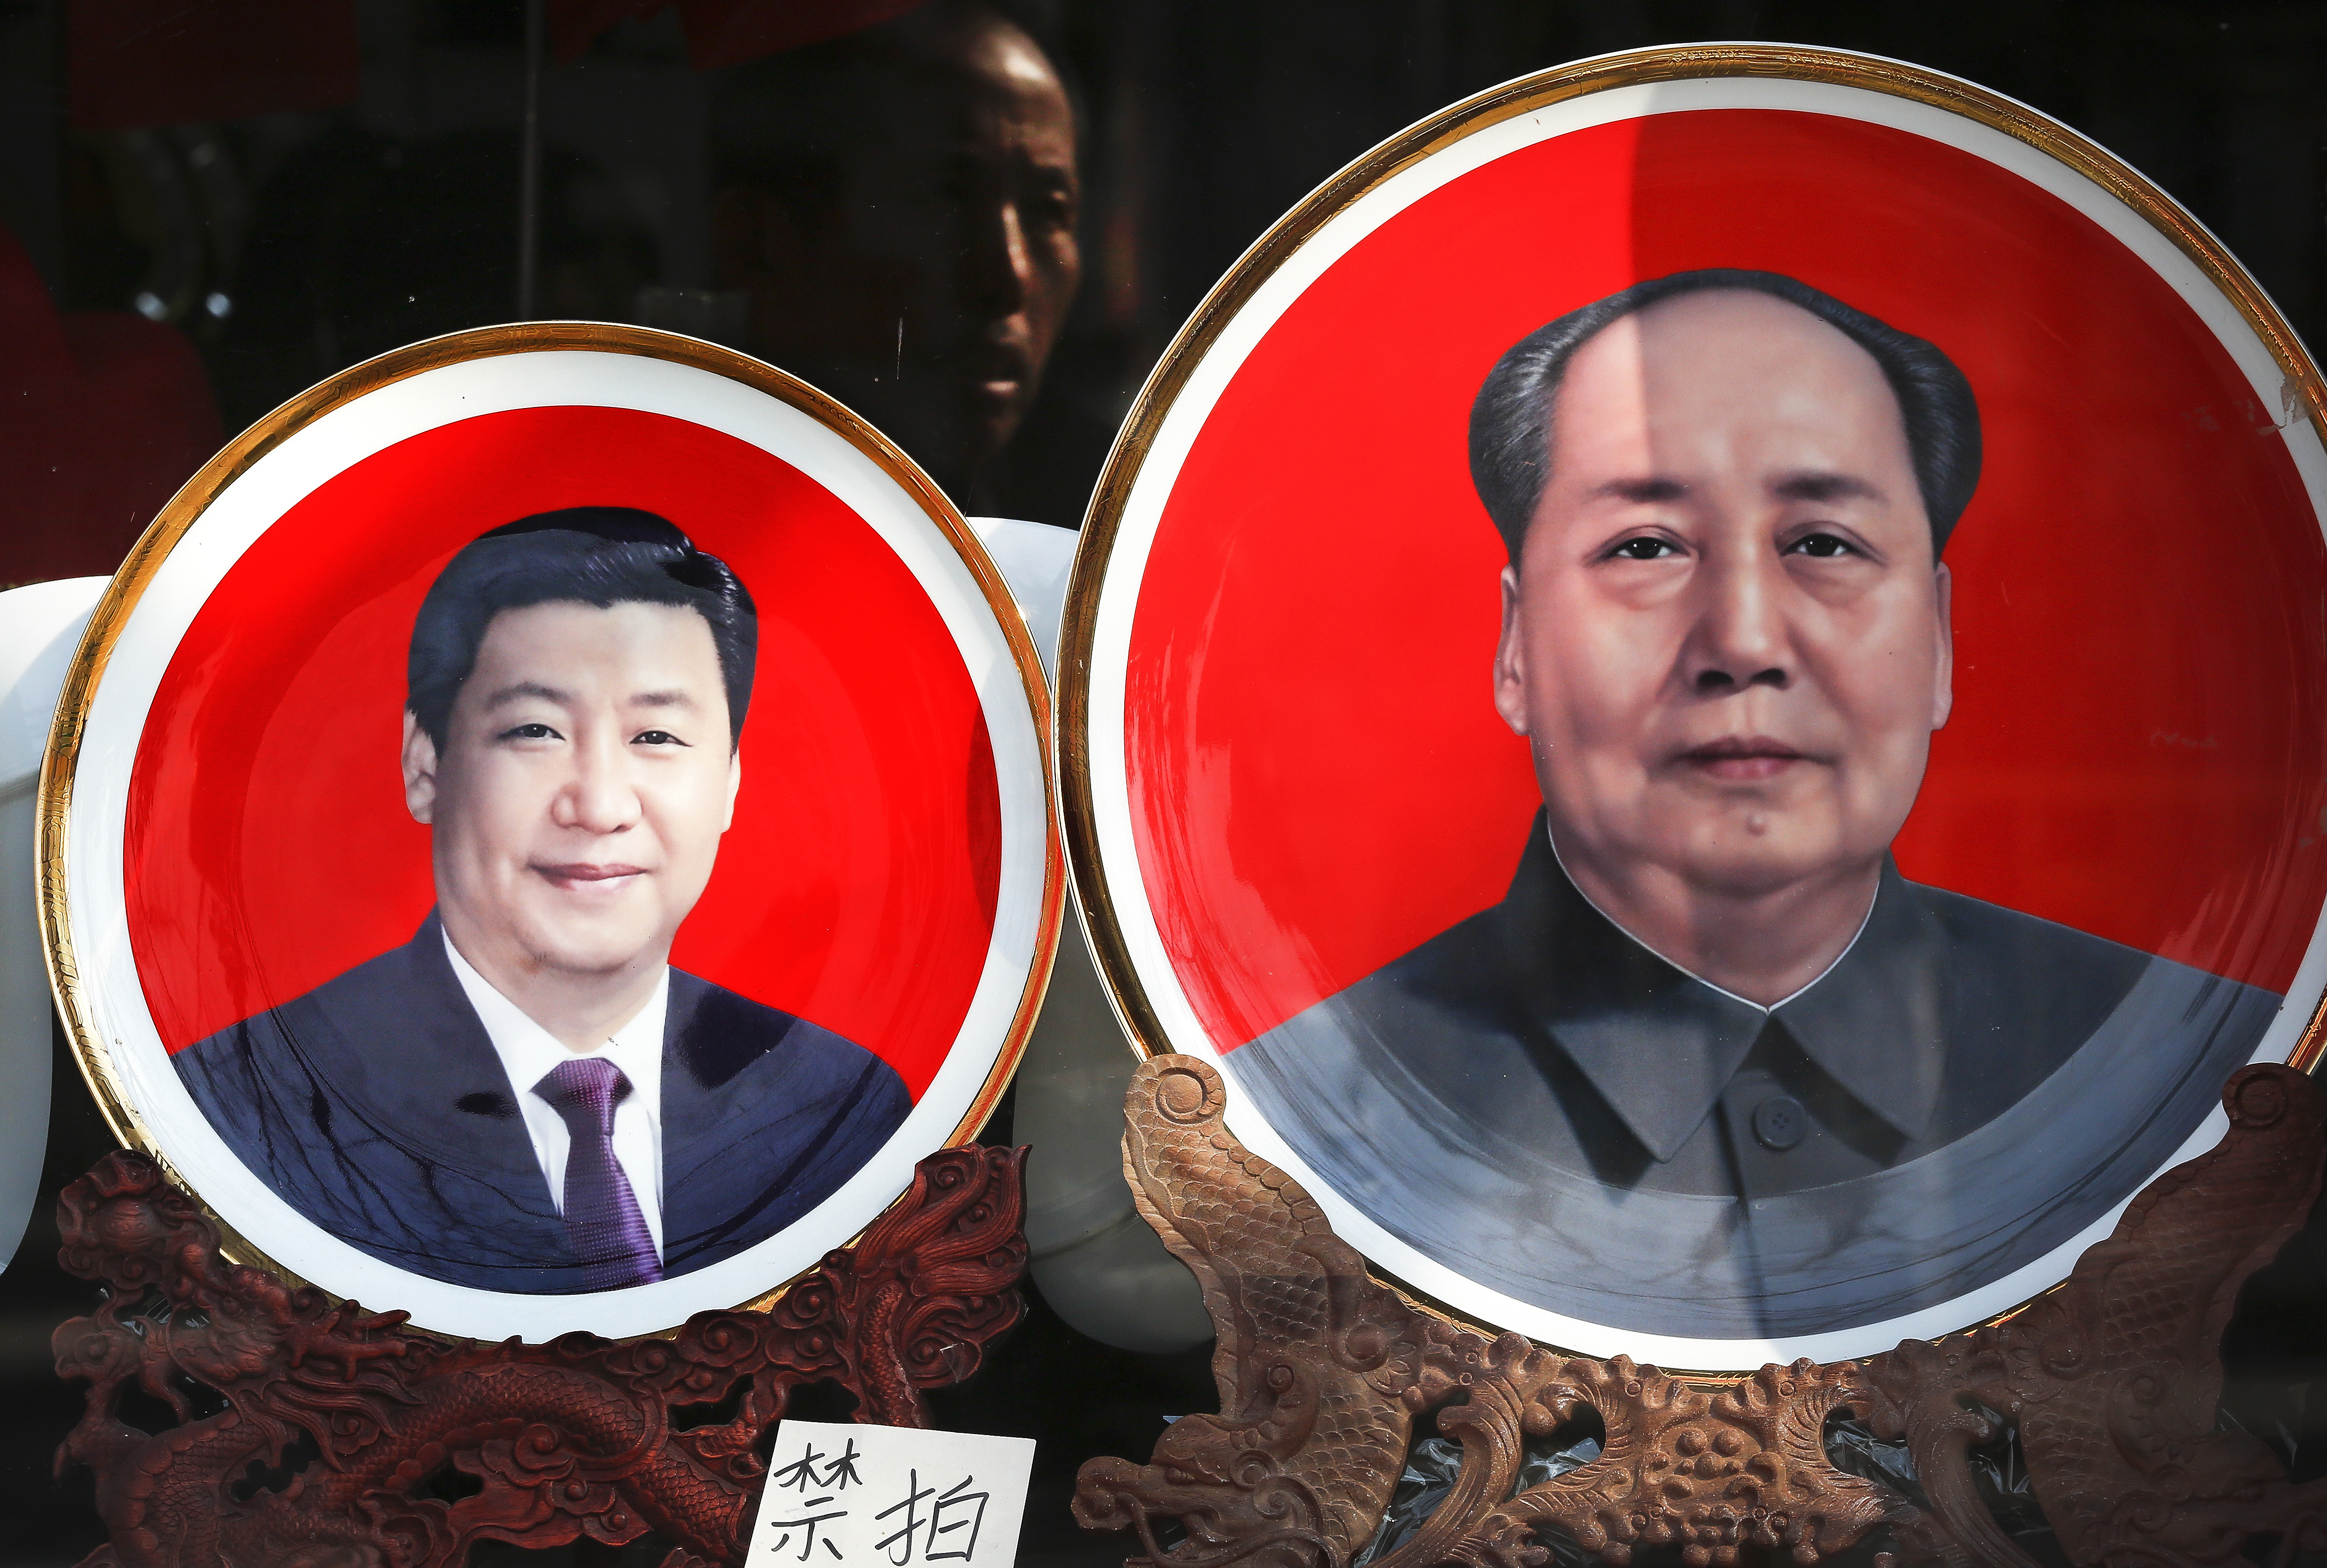 Bei einem Souvenirhändler in Peking stehen Plaketten mit den Konterfeis von Xi und Mao. | picture alliance / Andy Wong/AP/dpa